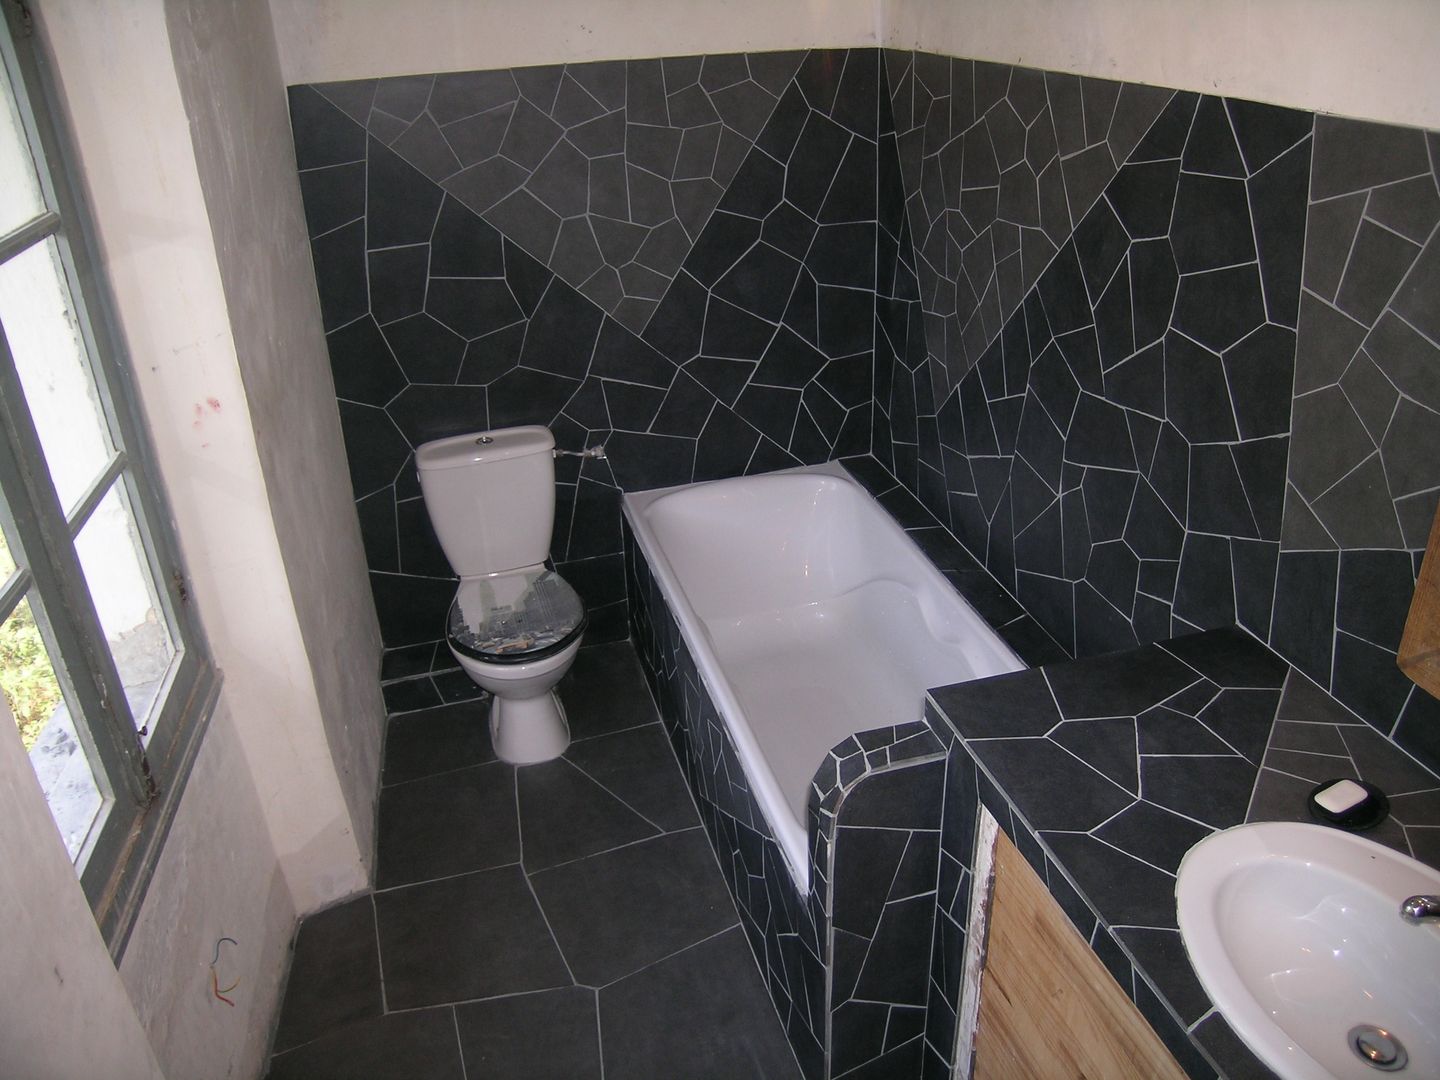 Mozaique, Moz-art mosaique Moz-art mosaique ห้องน้ำ ของแต่งห้องน้ำ